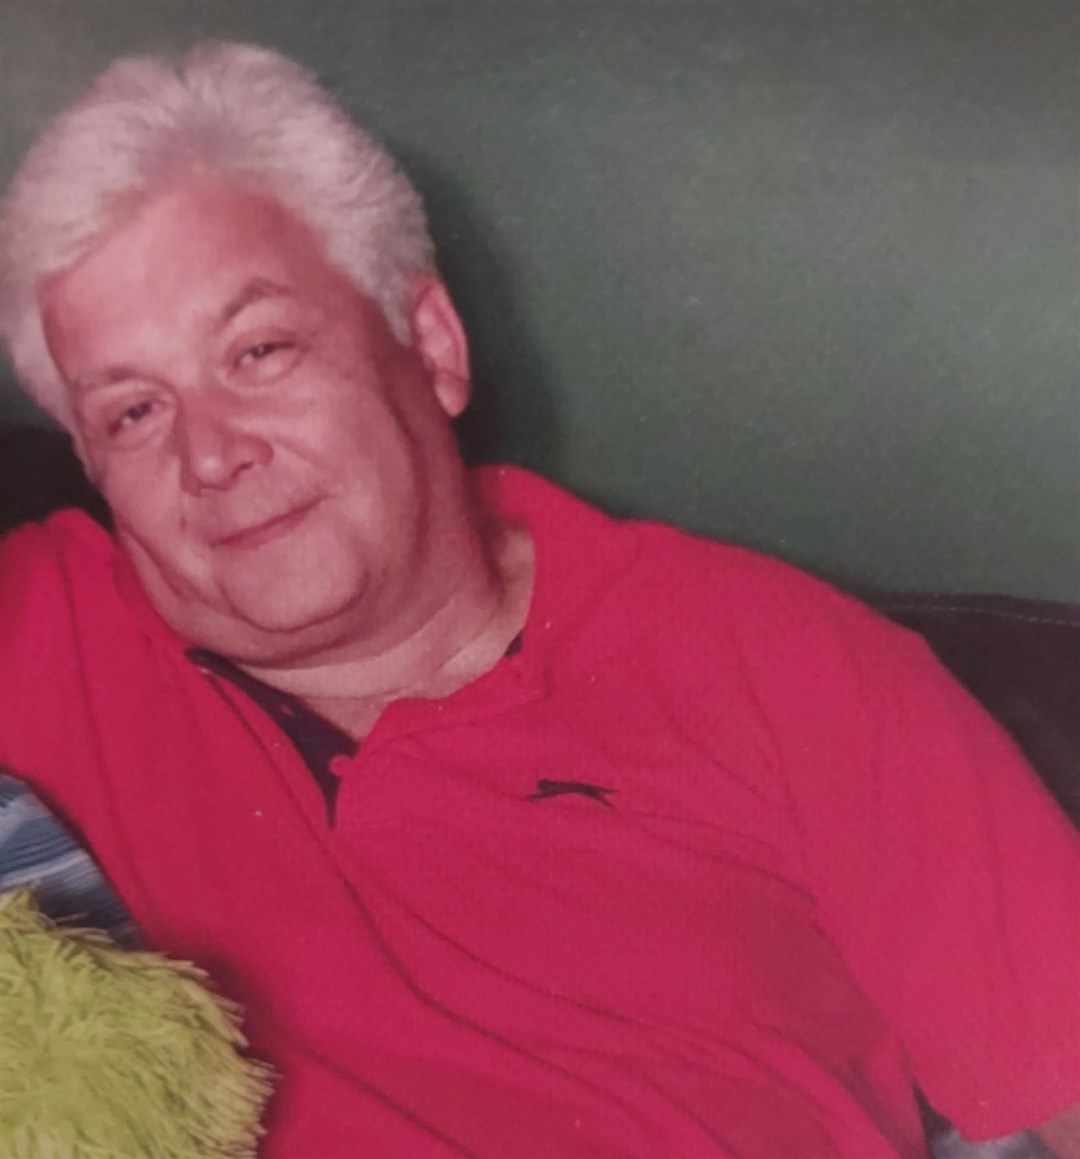 Missing man Steven Kennedy was last seen in Conon Bridge